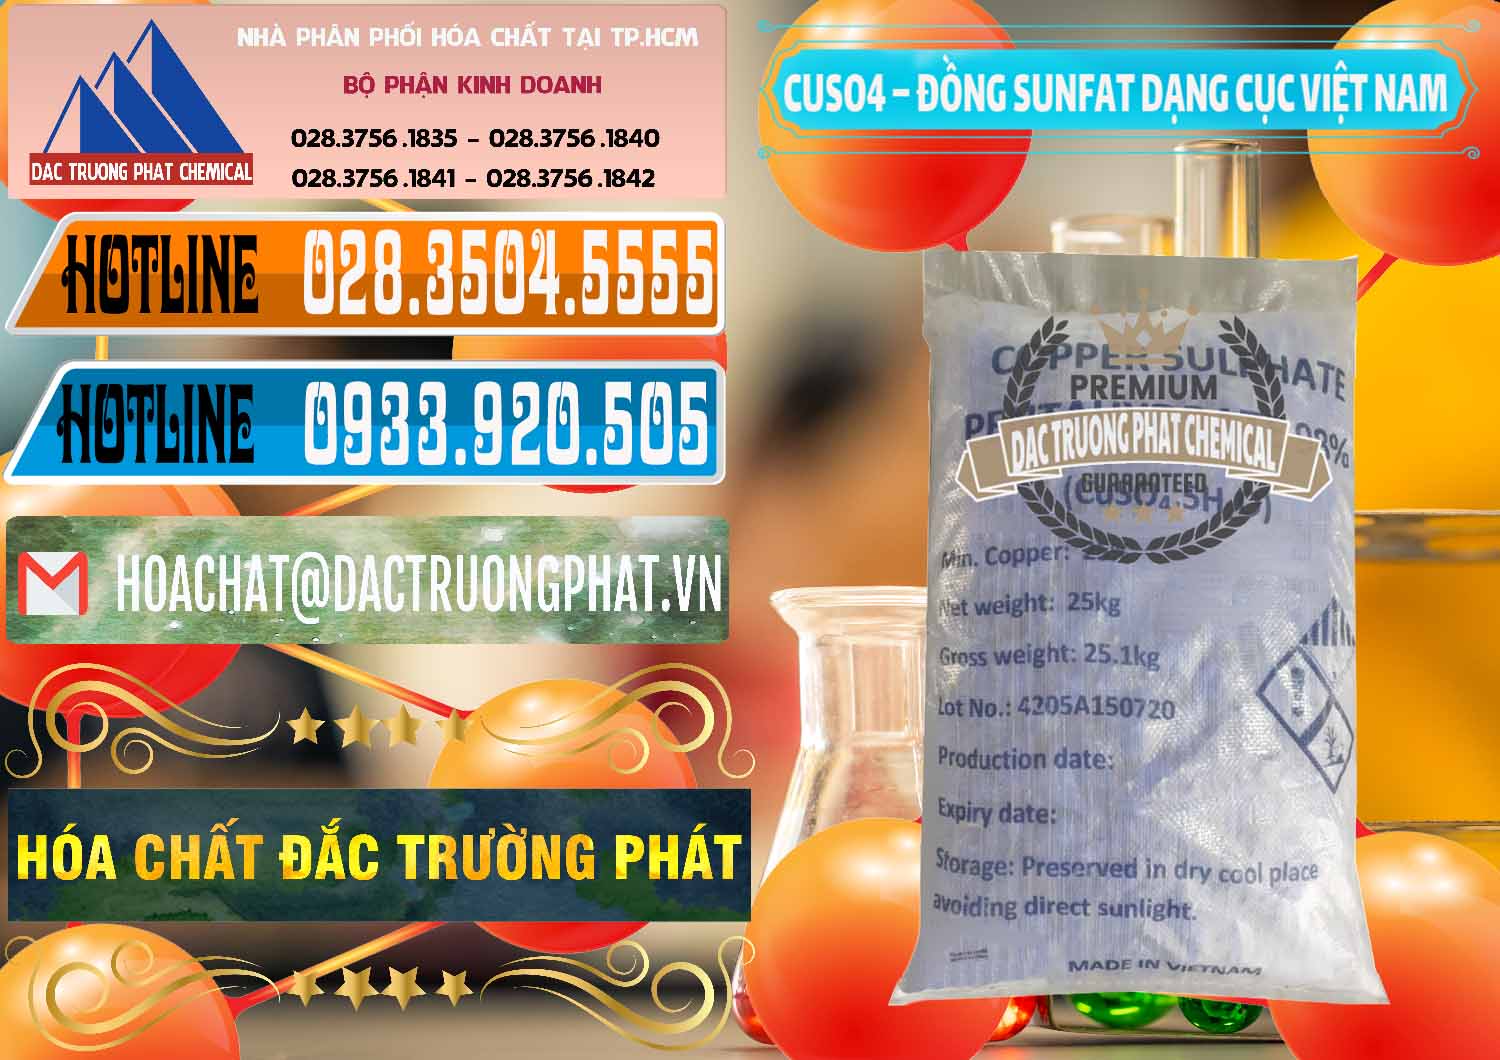 Cty bán và cung cấp CUSO4 – Đồng Sunfat Dạng Cục Việt Nam - 0303 - Chuyên cung ứng & bán hóa chất tại TP.HCM - stmp.net